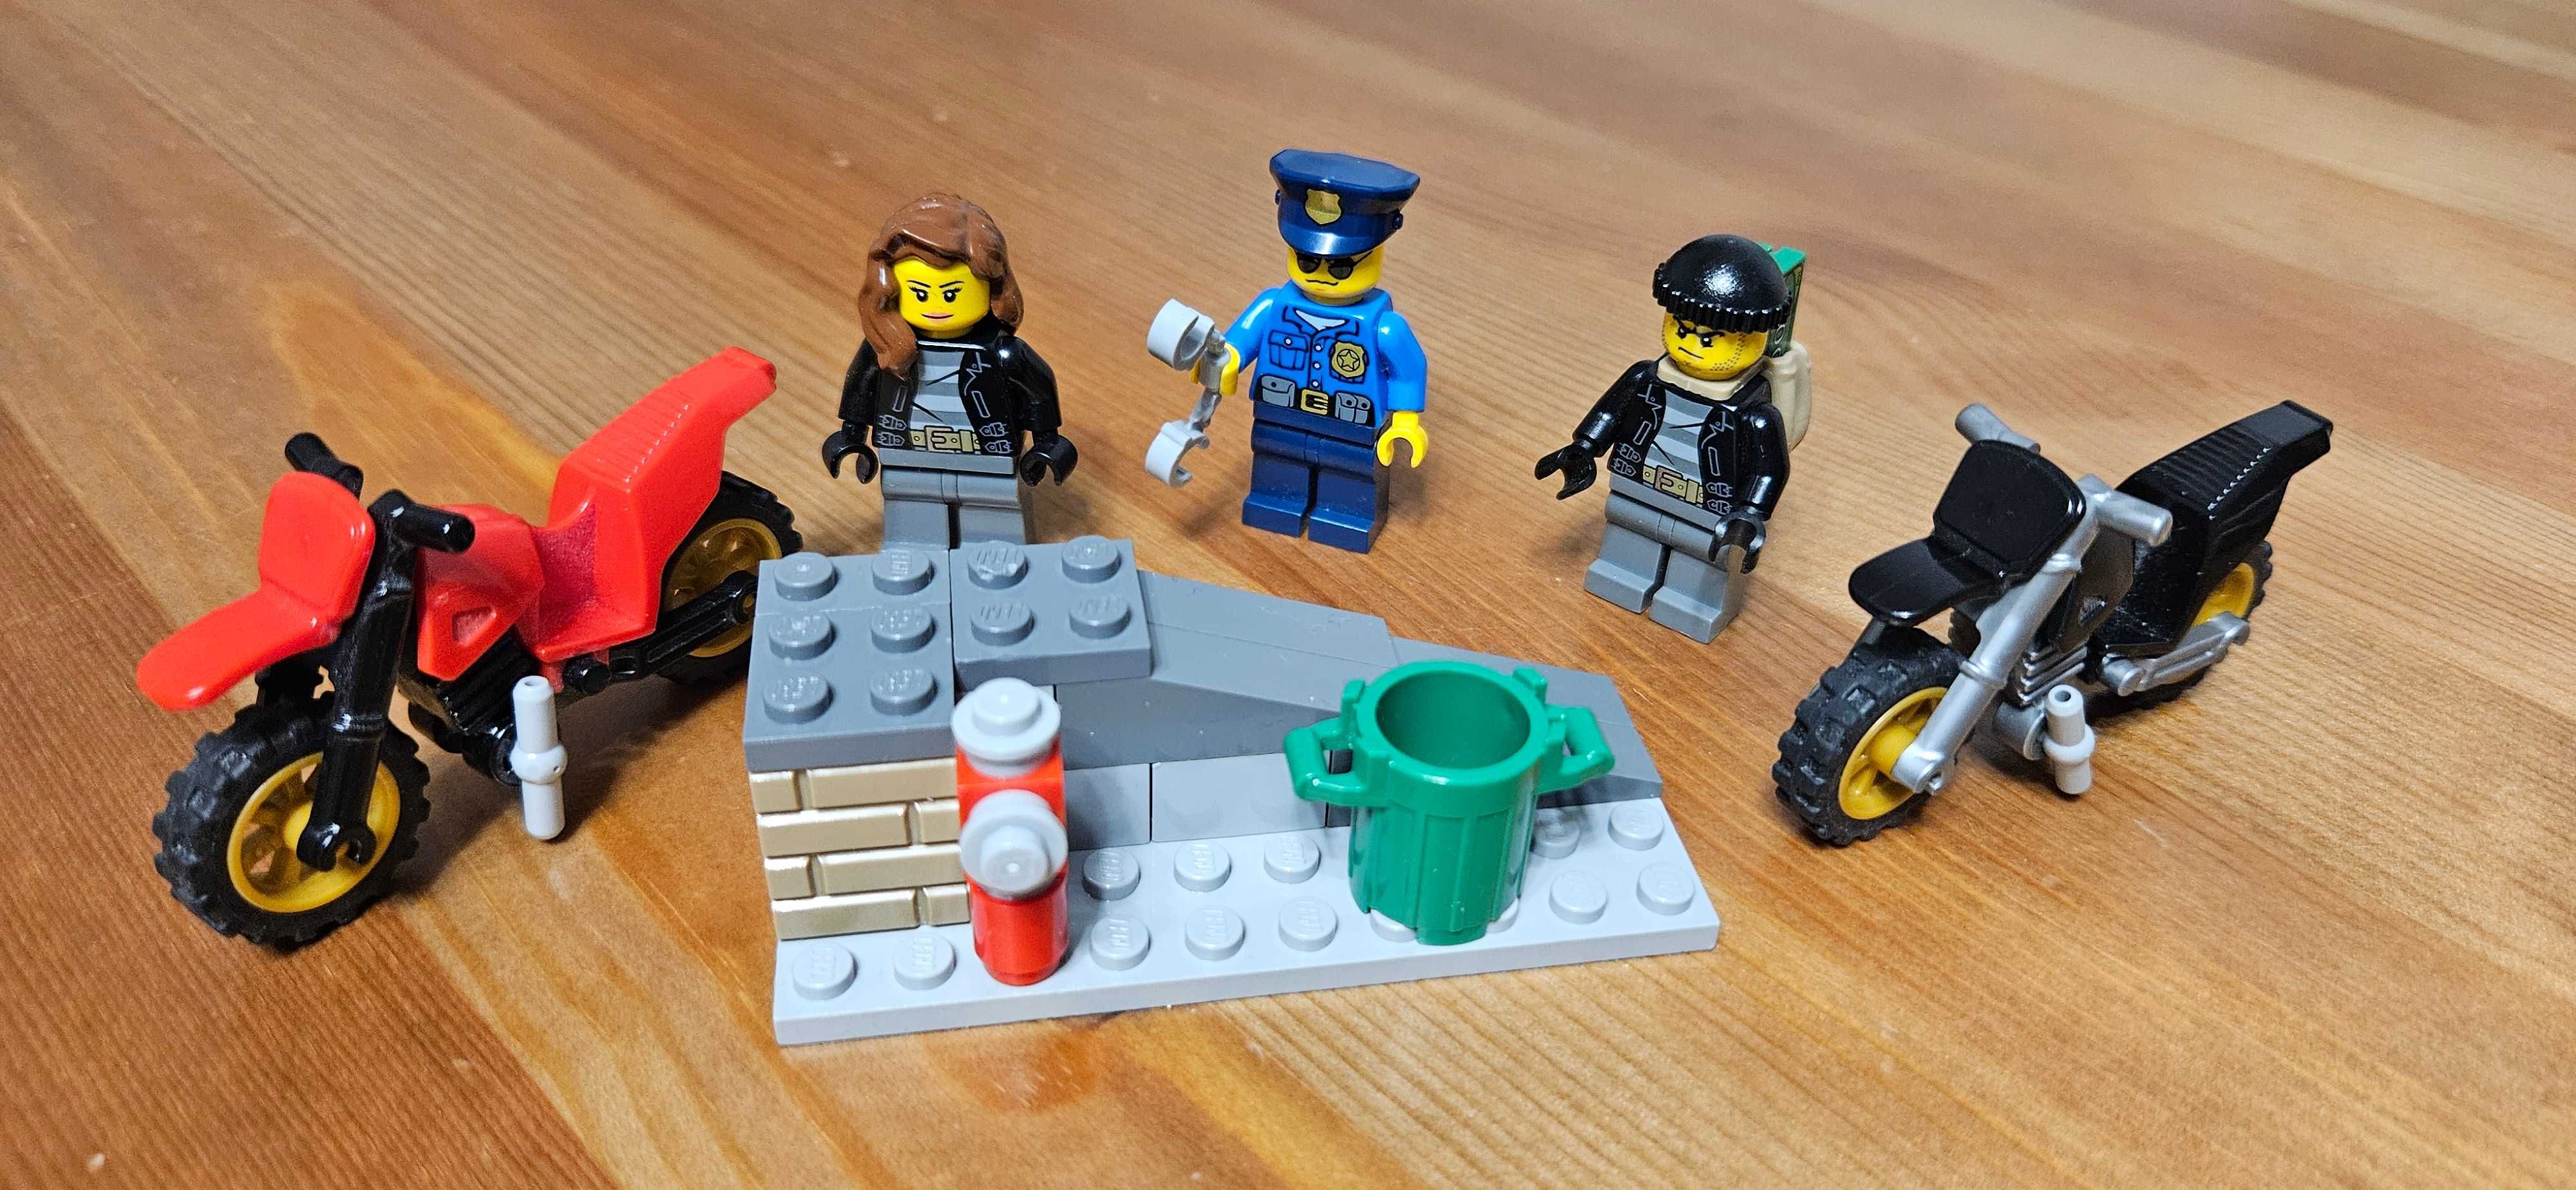 Lego City 60042 Superszybki Pościg Policyjny